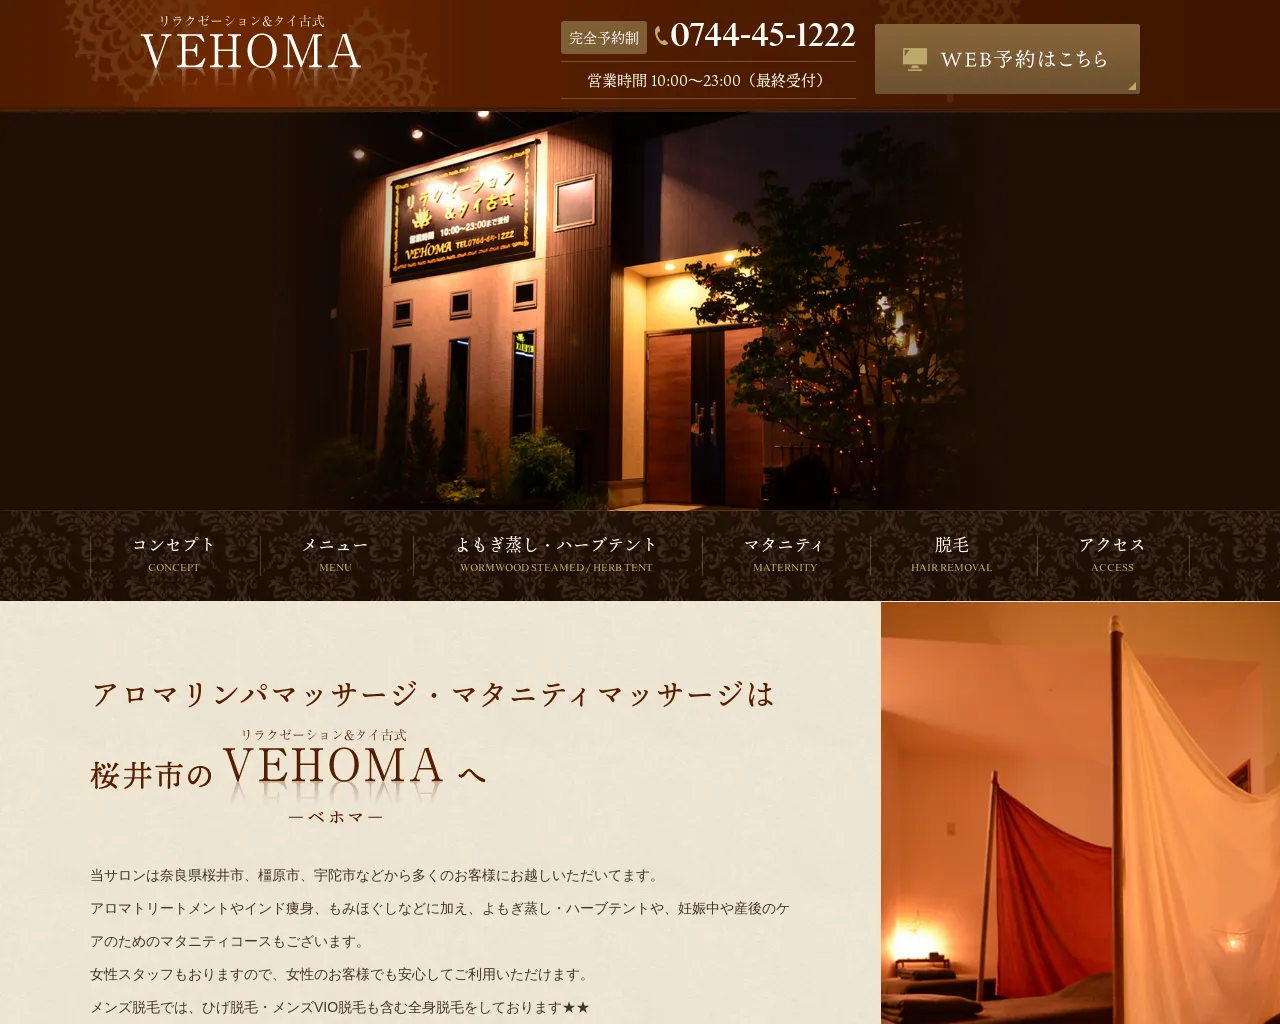 VEHOMA site